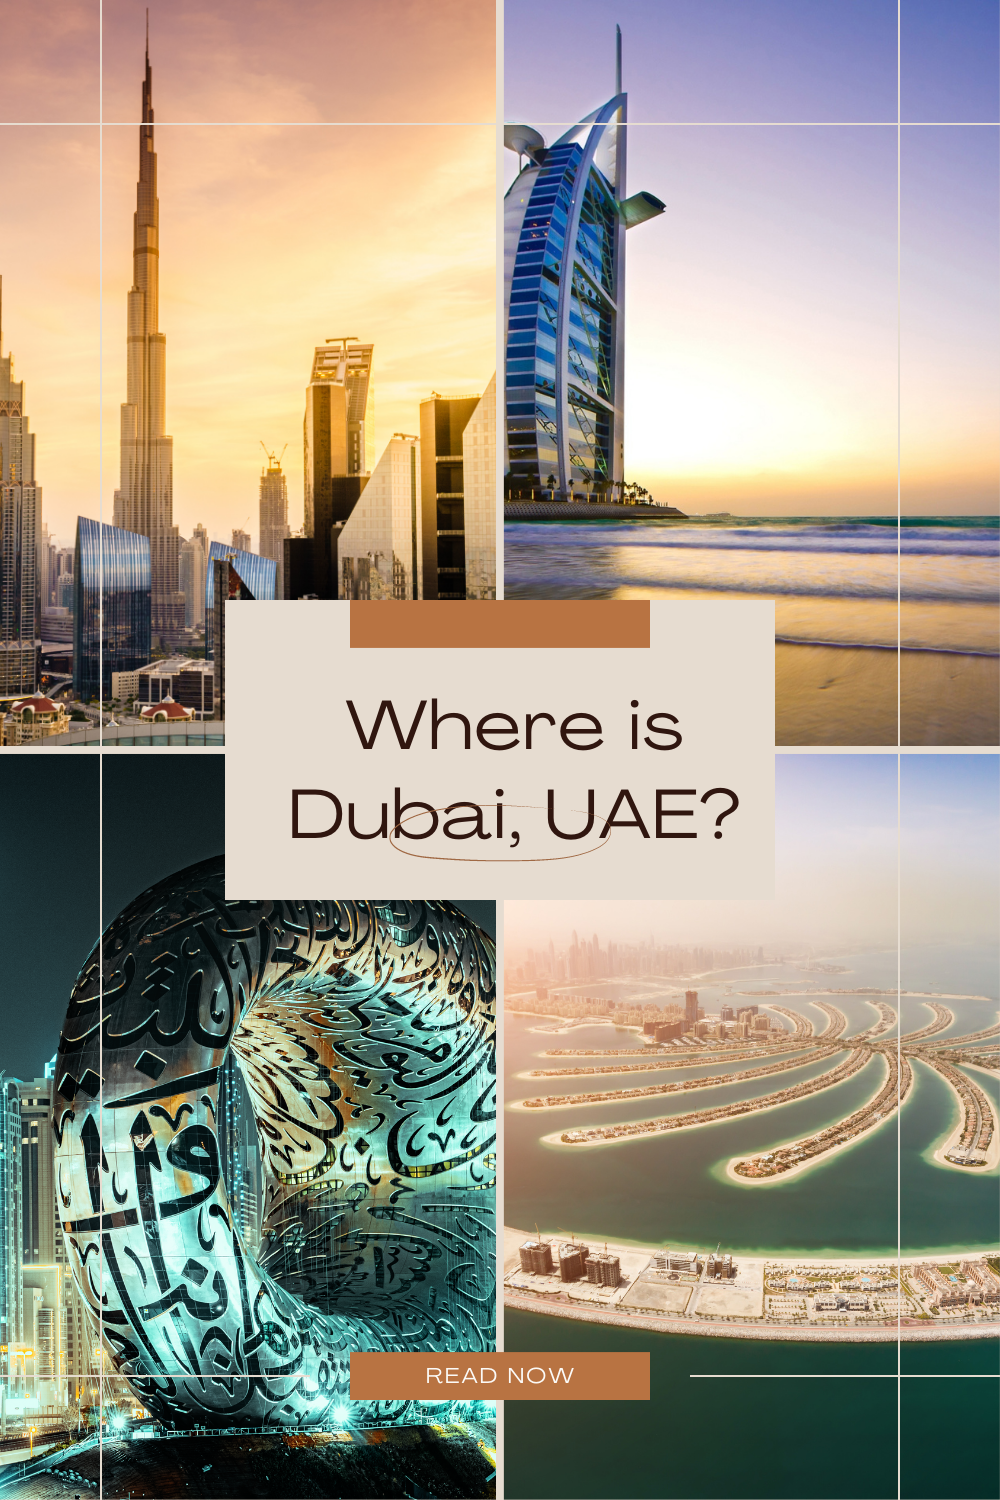 Where is Dubai, UAE?